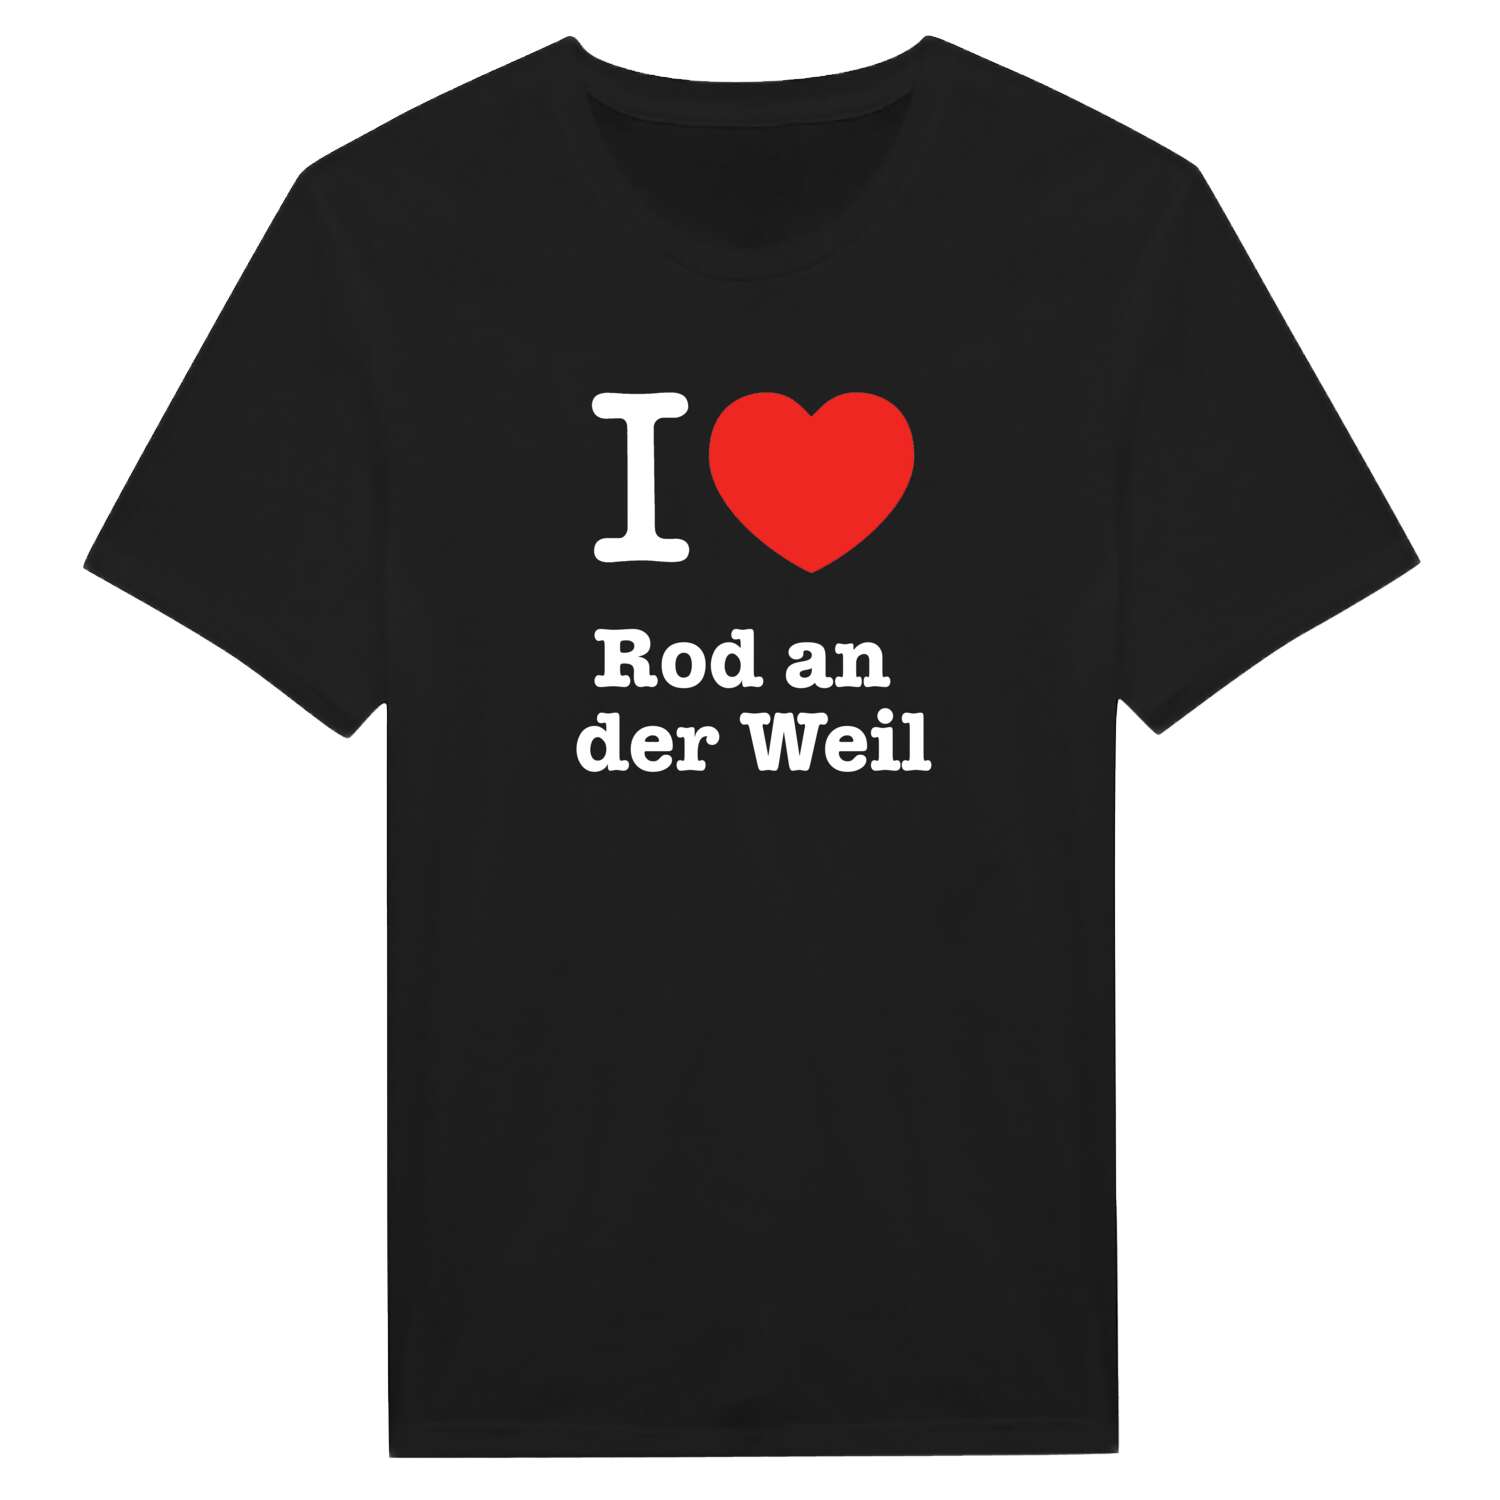 Rod an der Weil T-Shirt »I love«